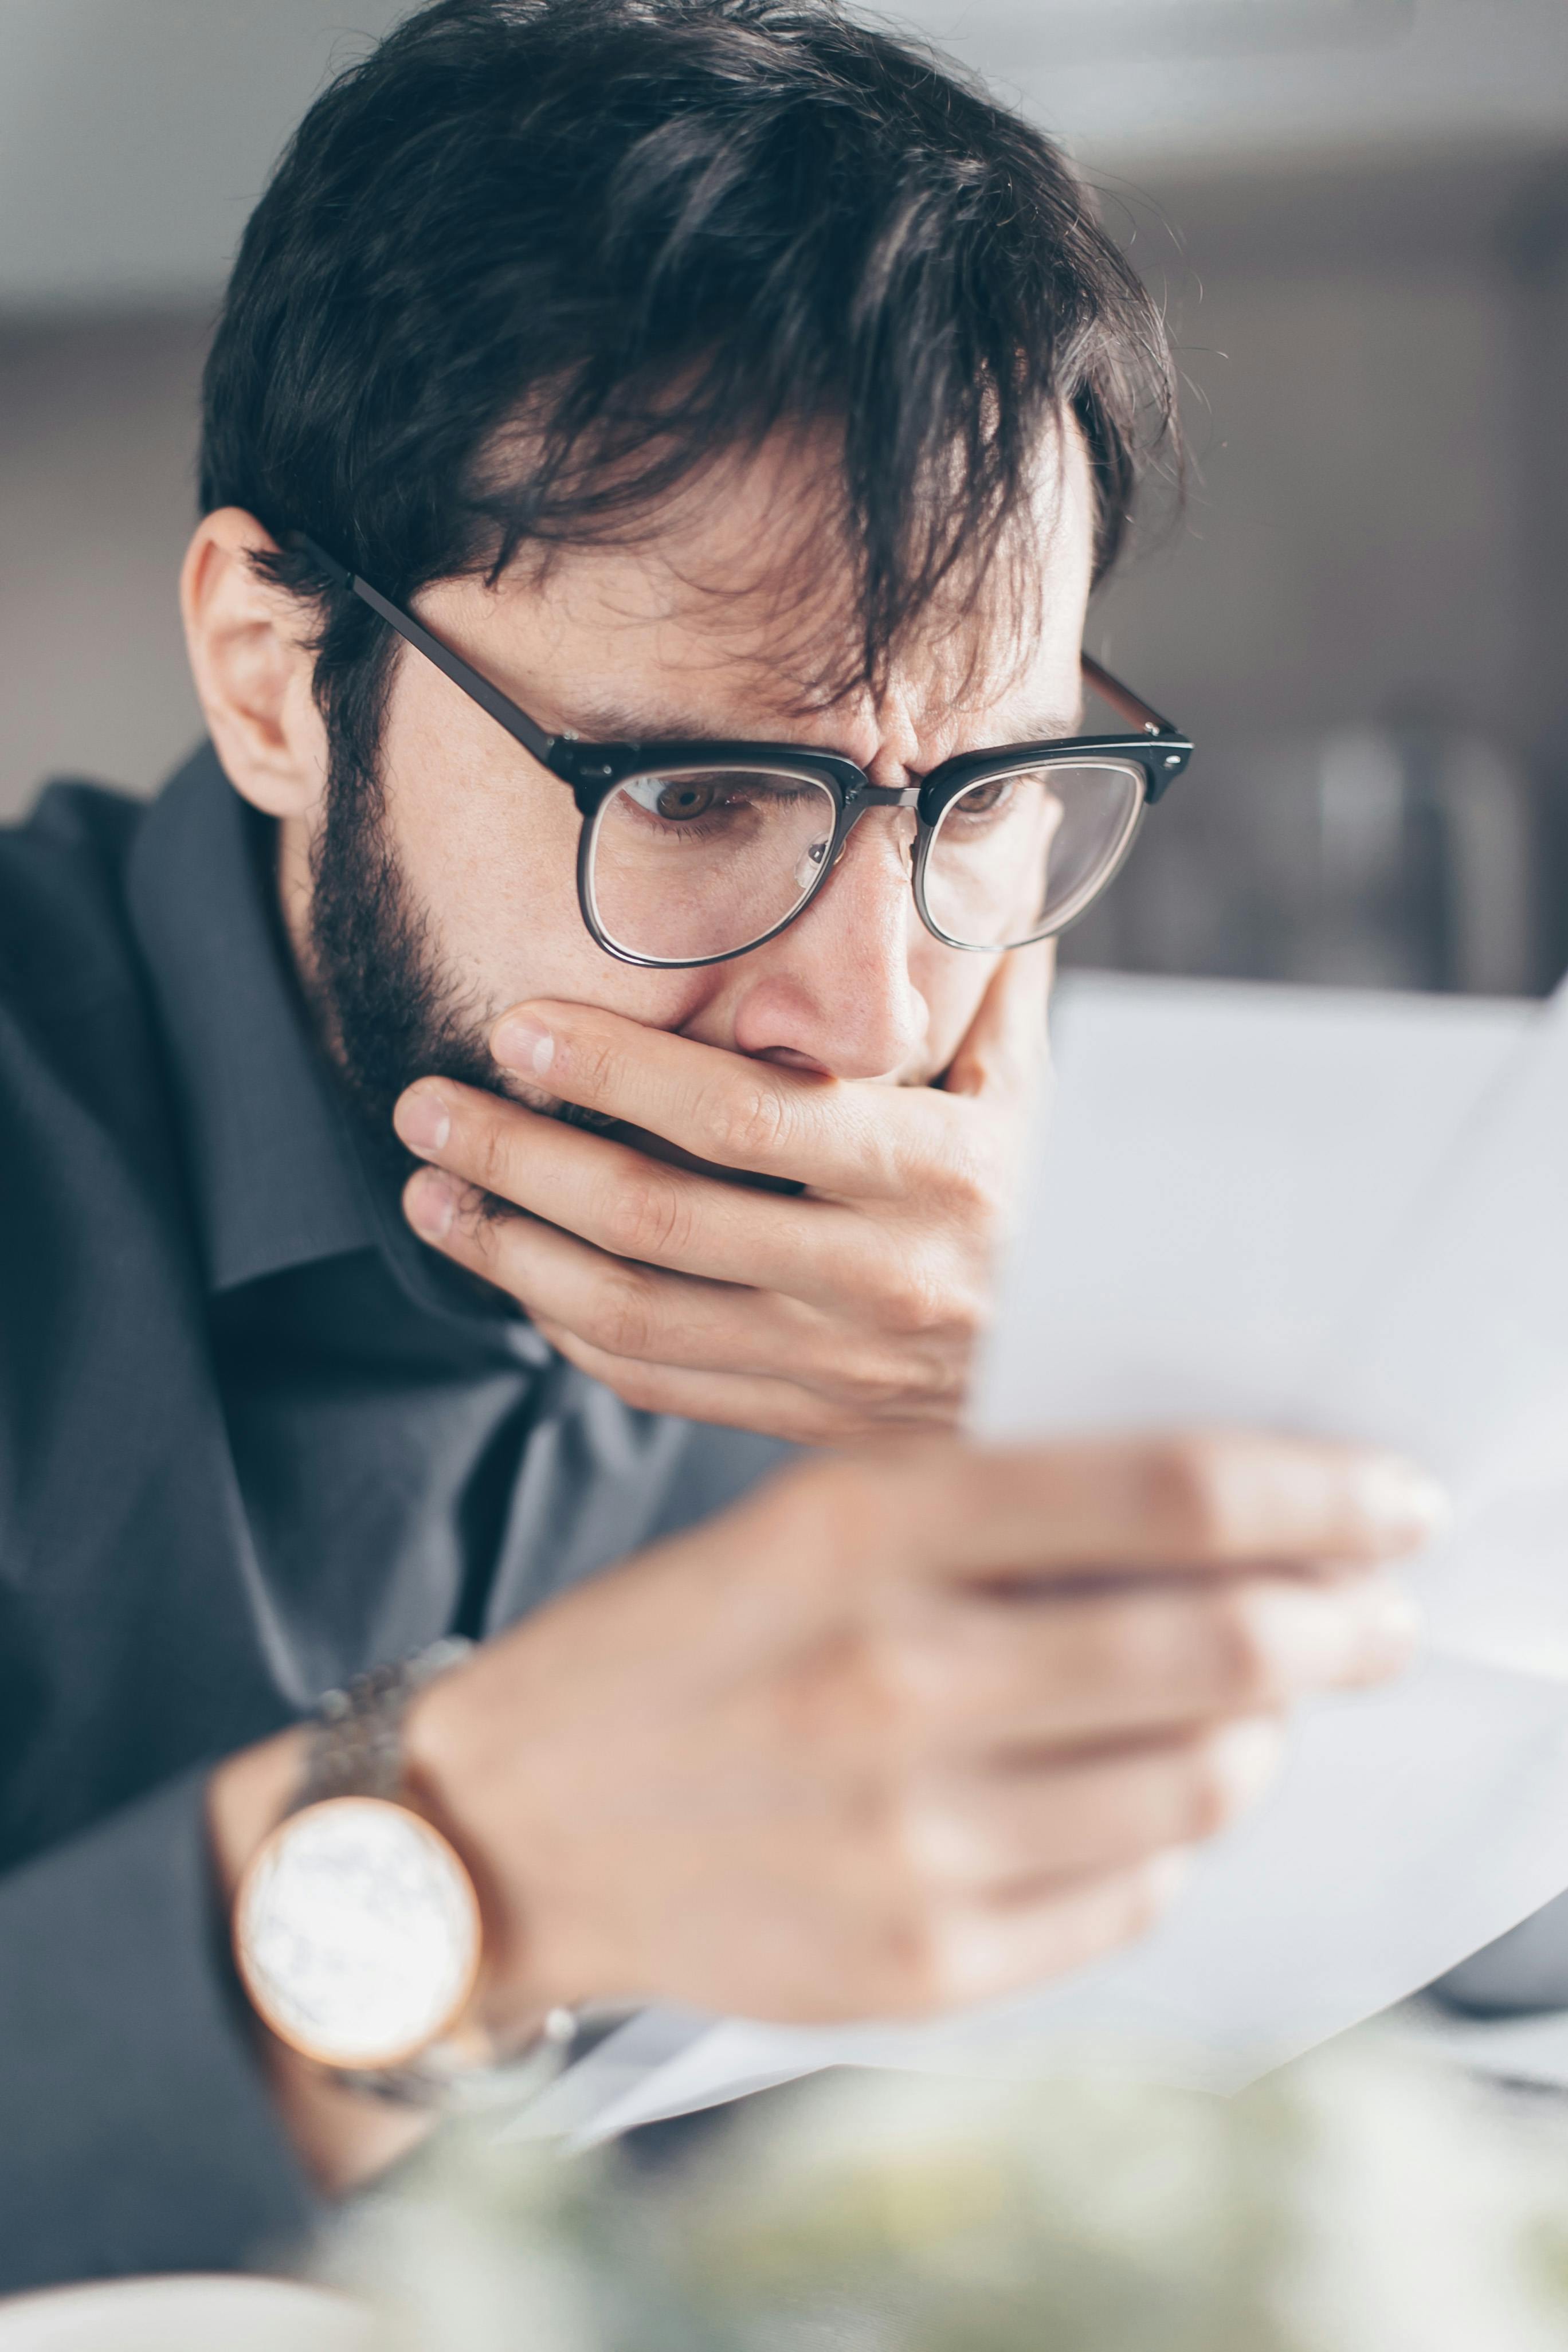 Un homme choqué se couvre la bouche tout en lisant quelque chose sur un papier | Source : Pexels